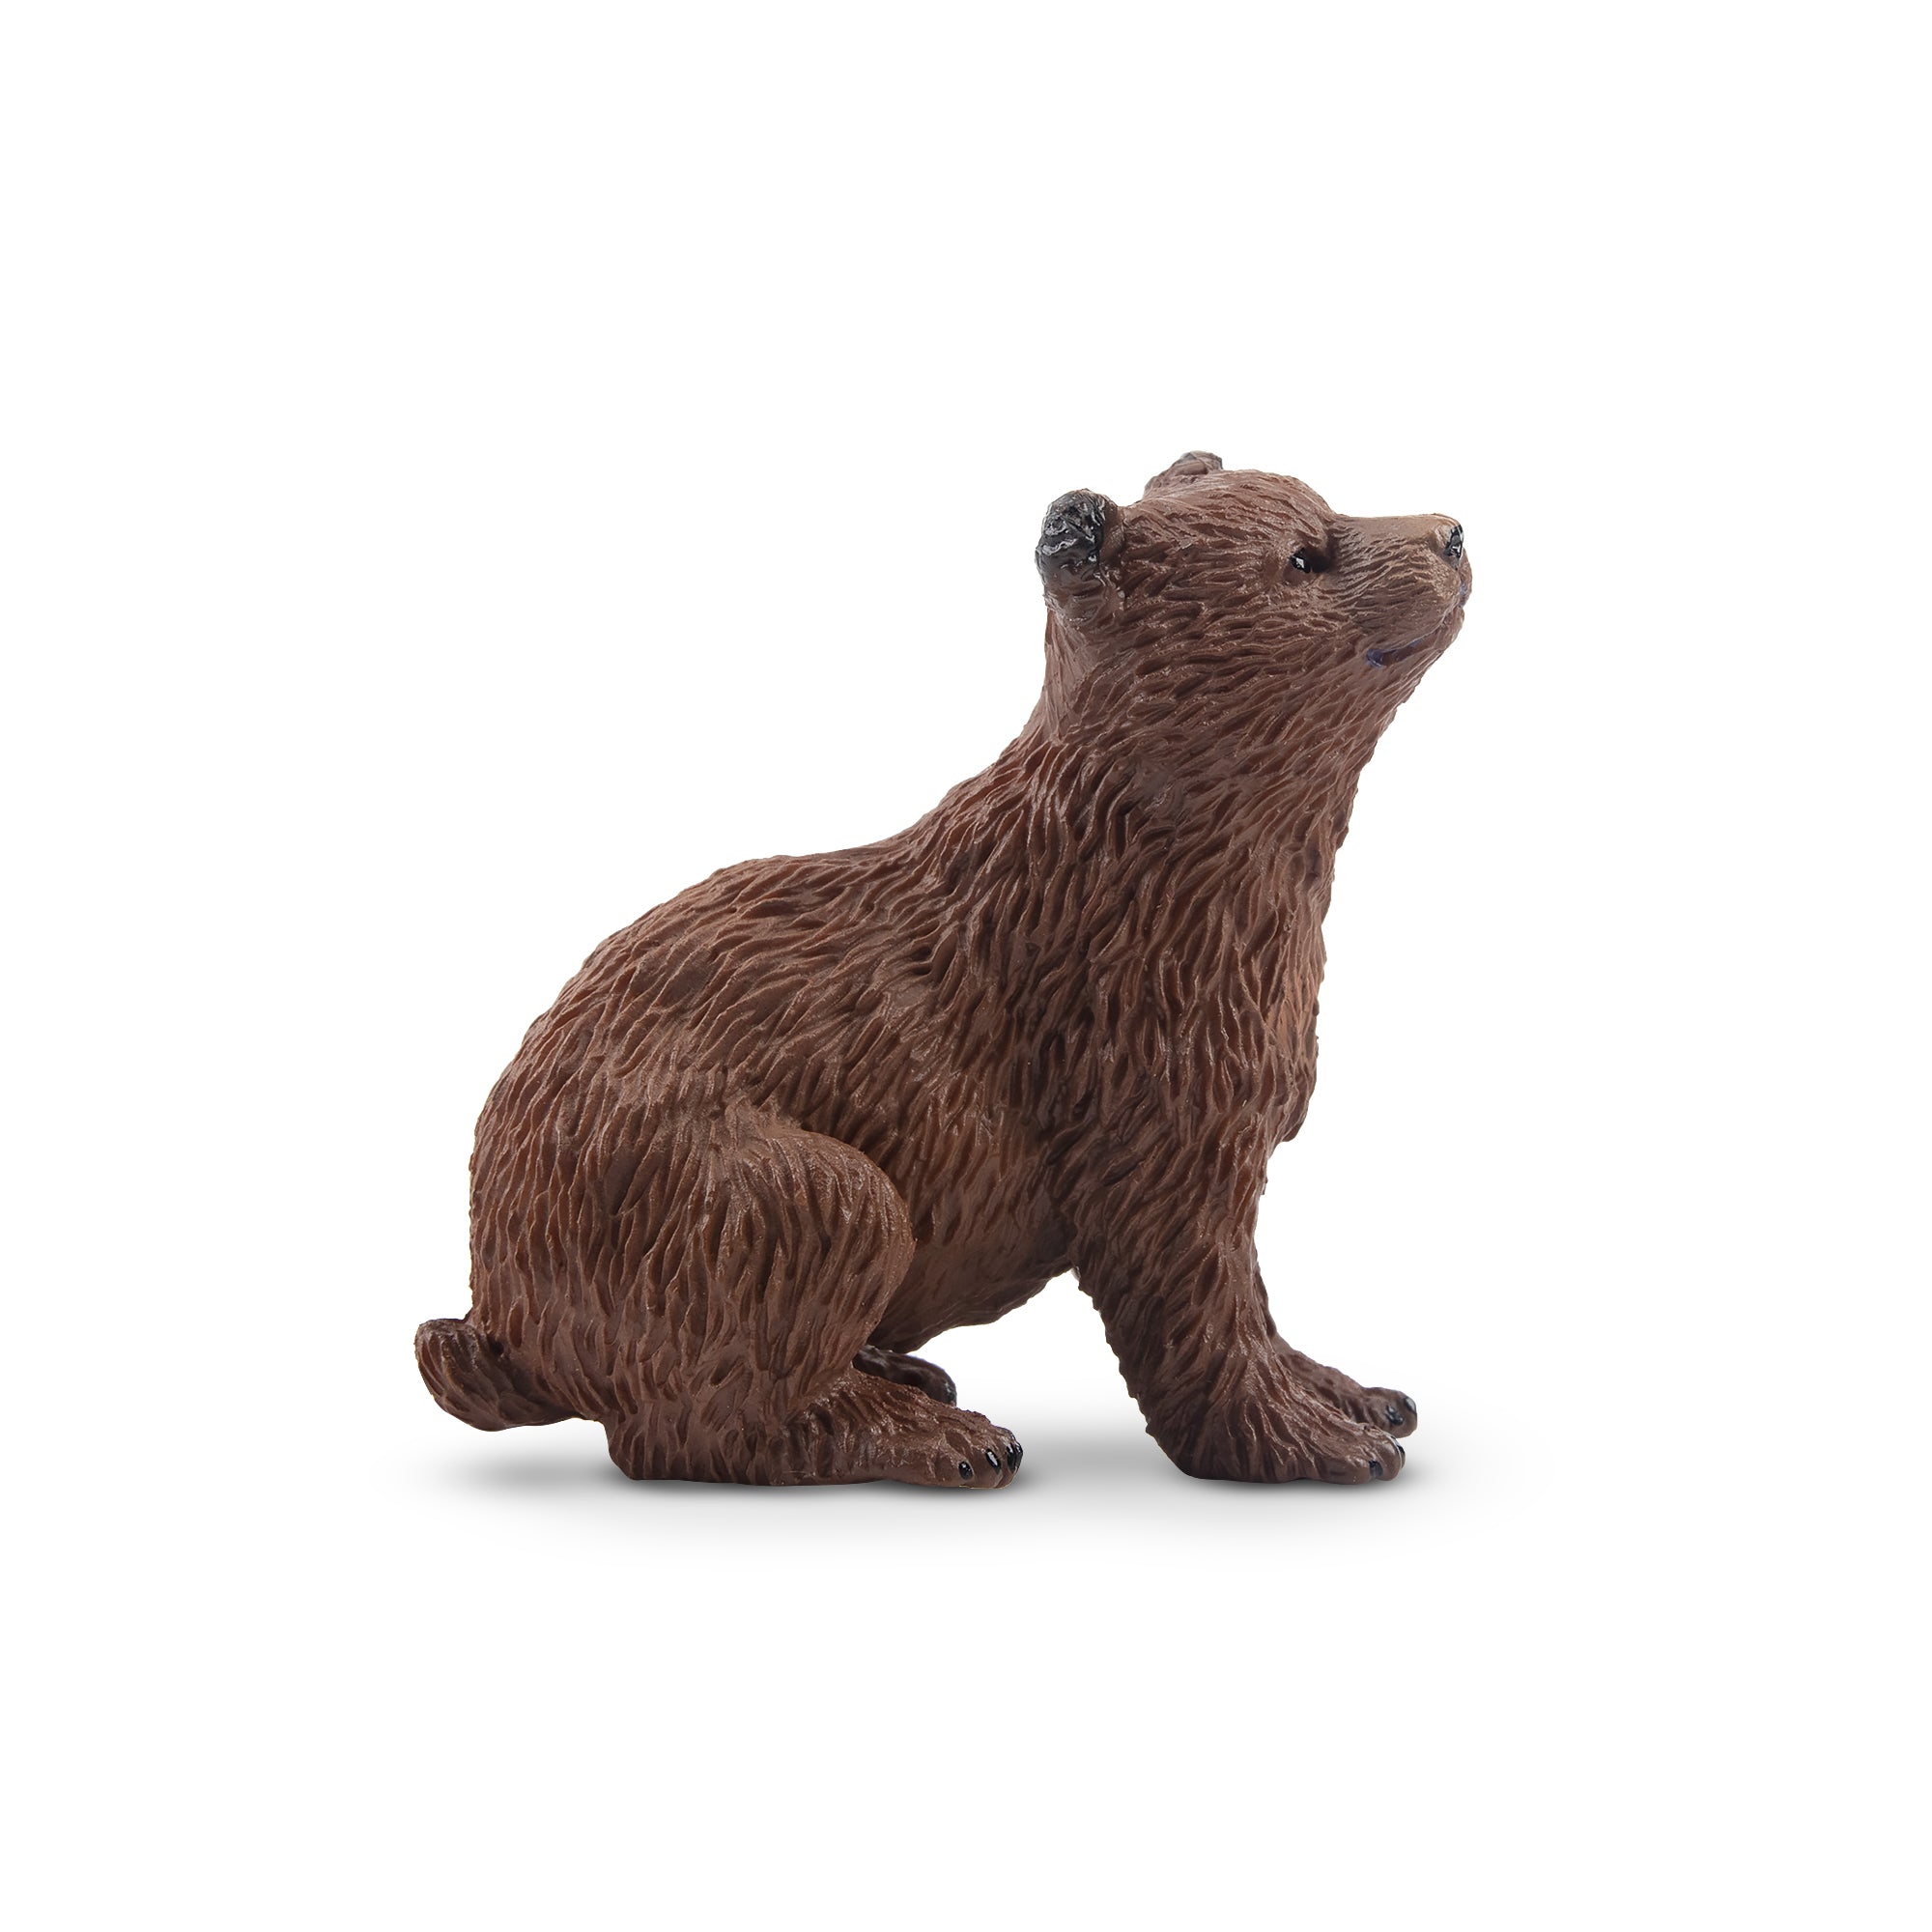 Toymany Sitting Brown Bear Cub Figurine Toy